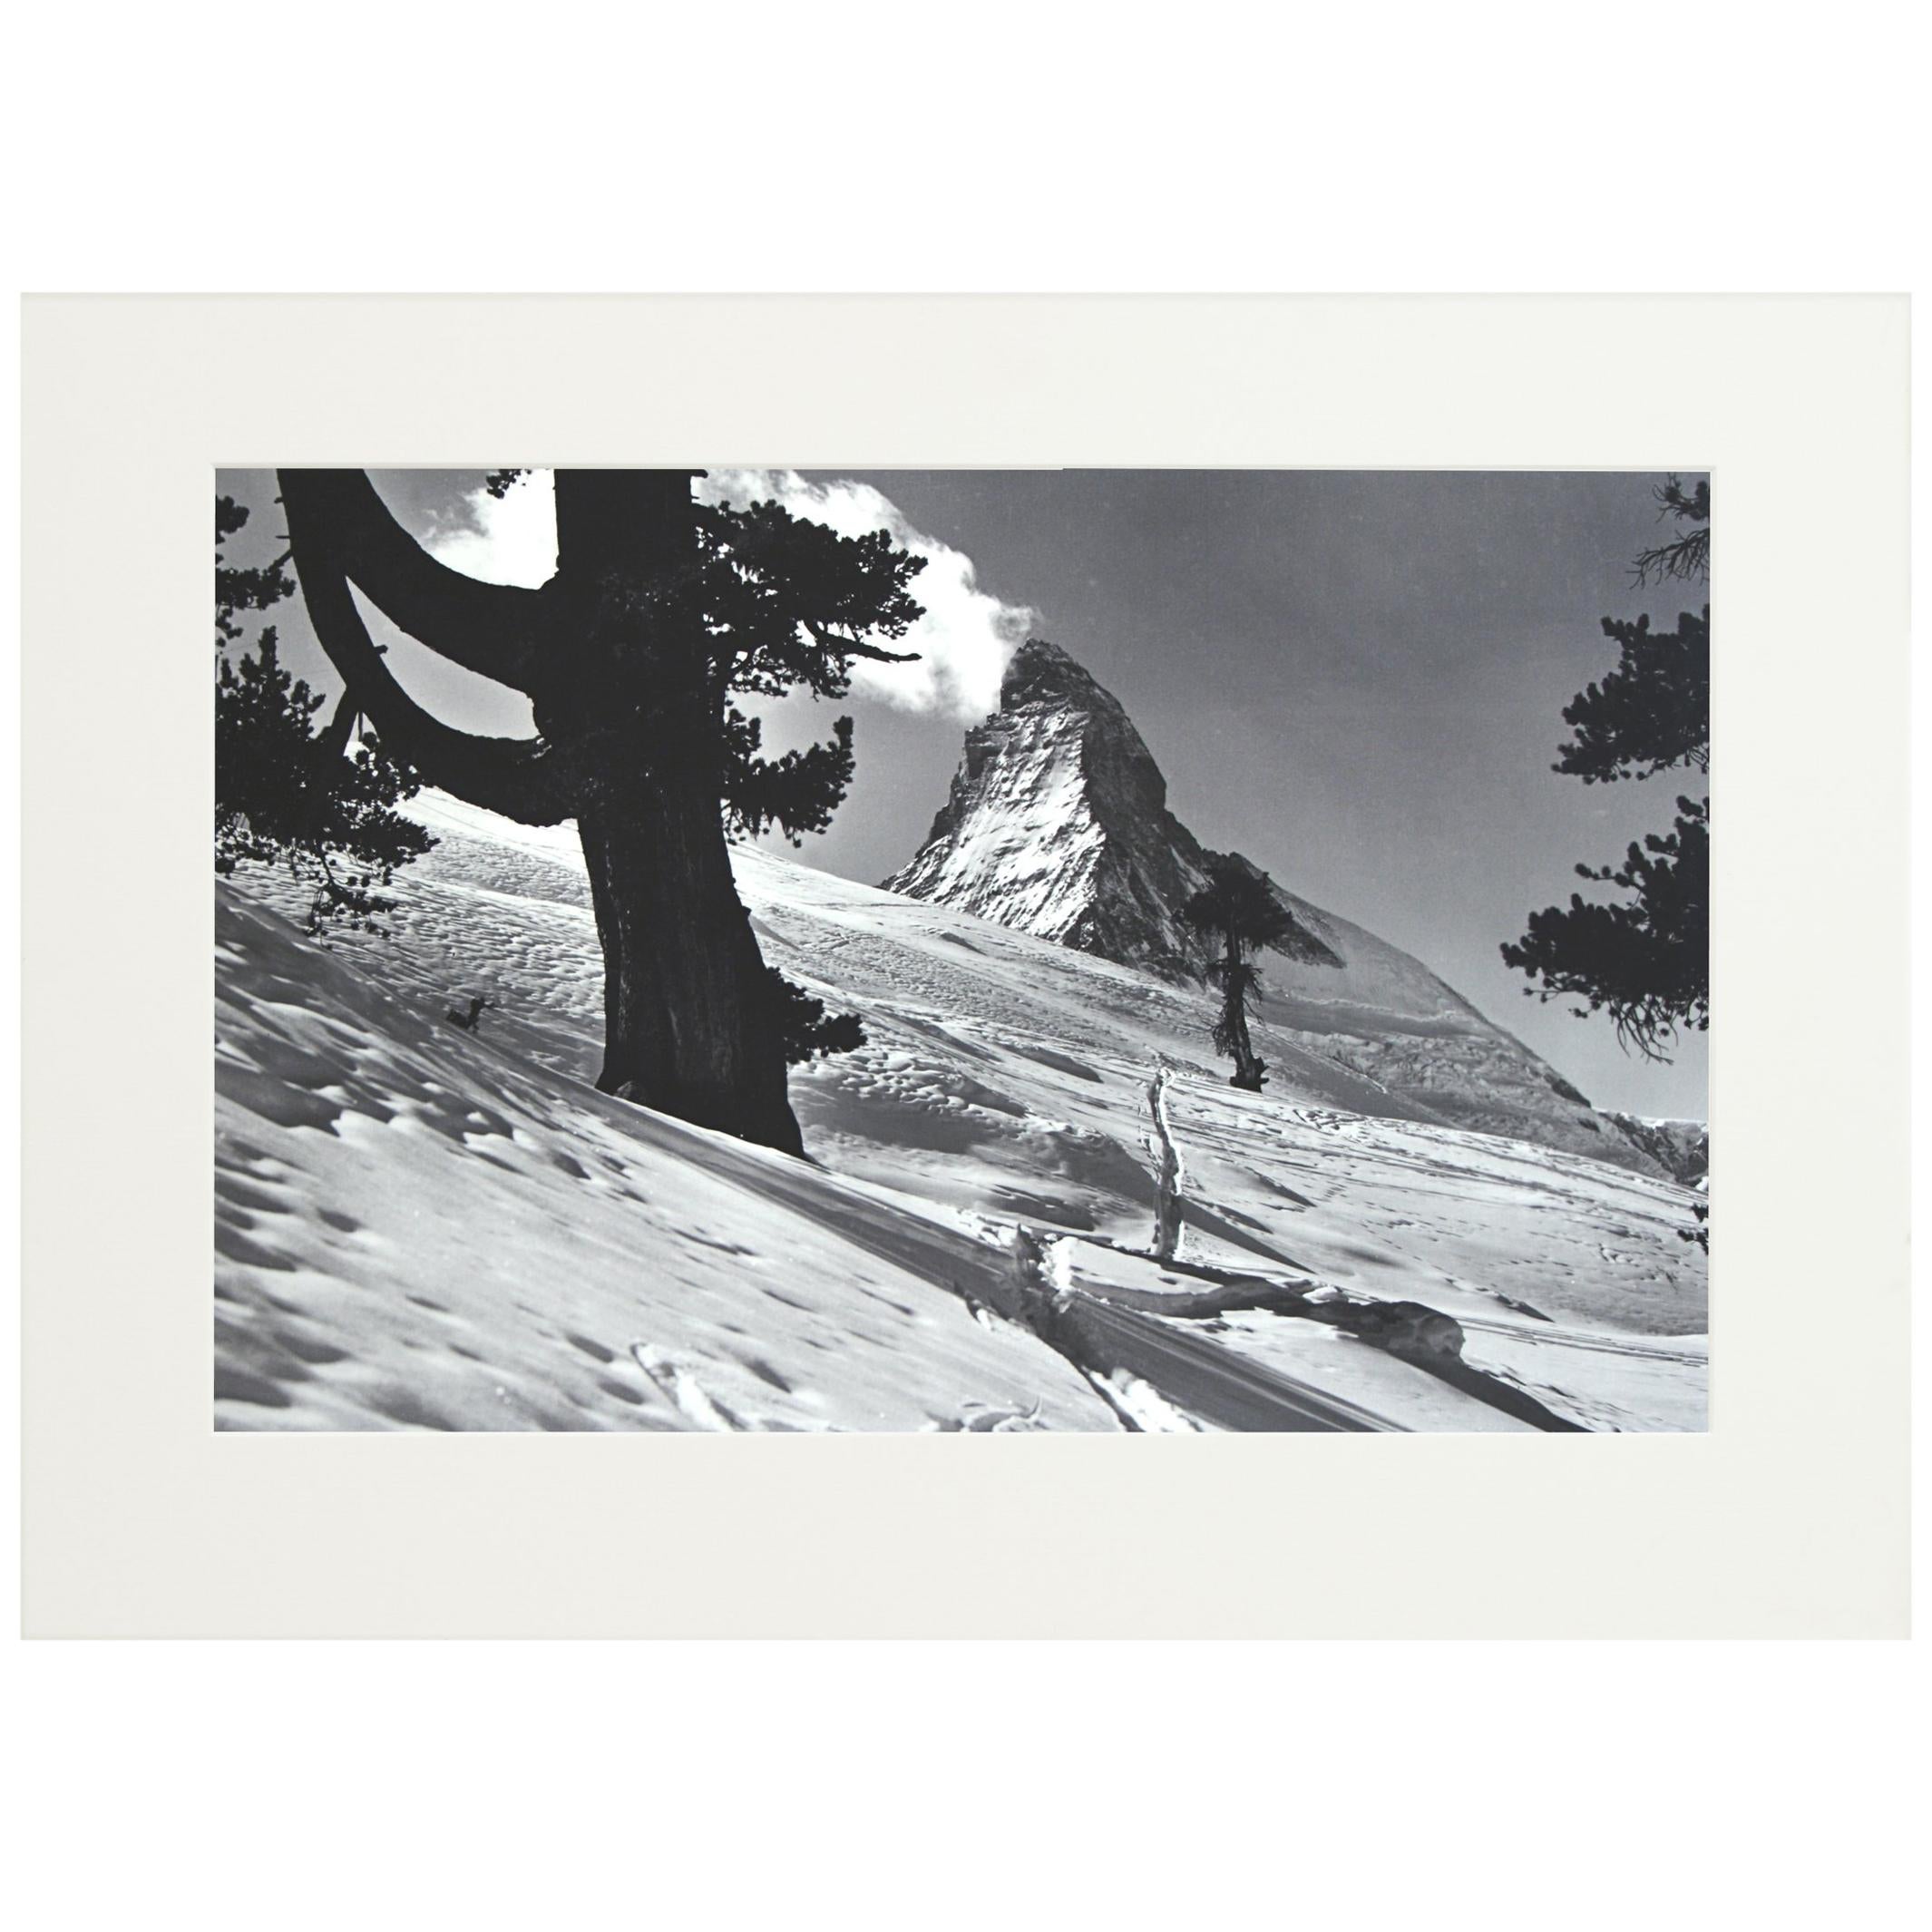 Alpine Ski Photograph, 'Matterhorn' Taken from Original 1930s Photograph